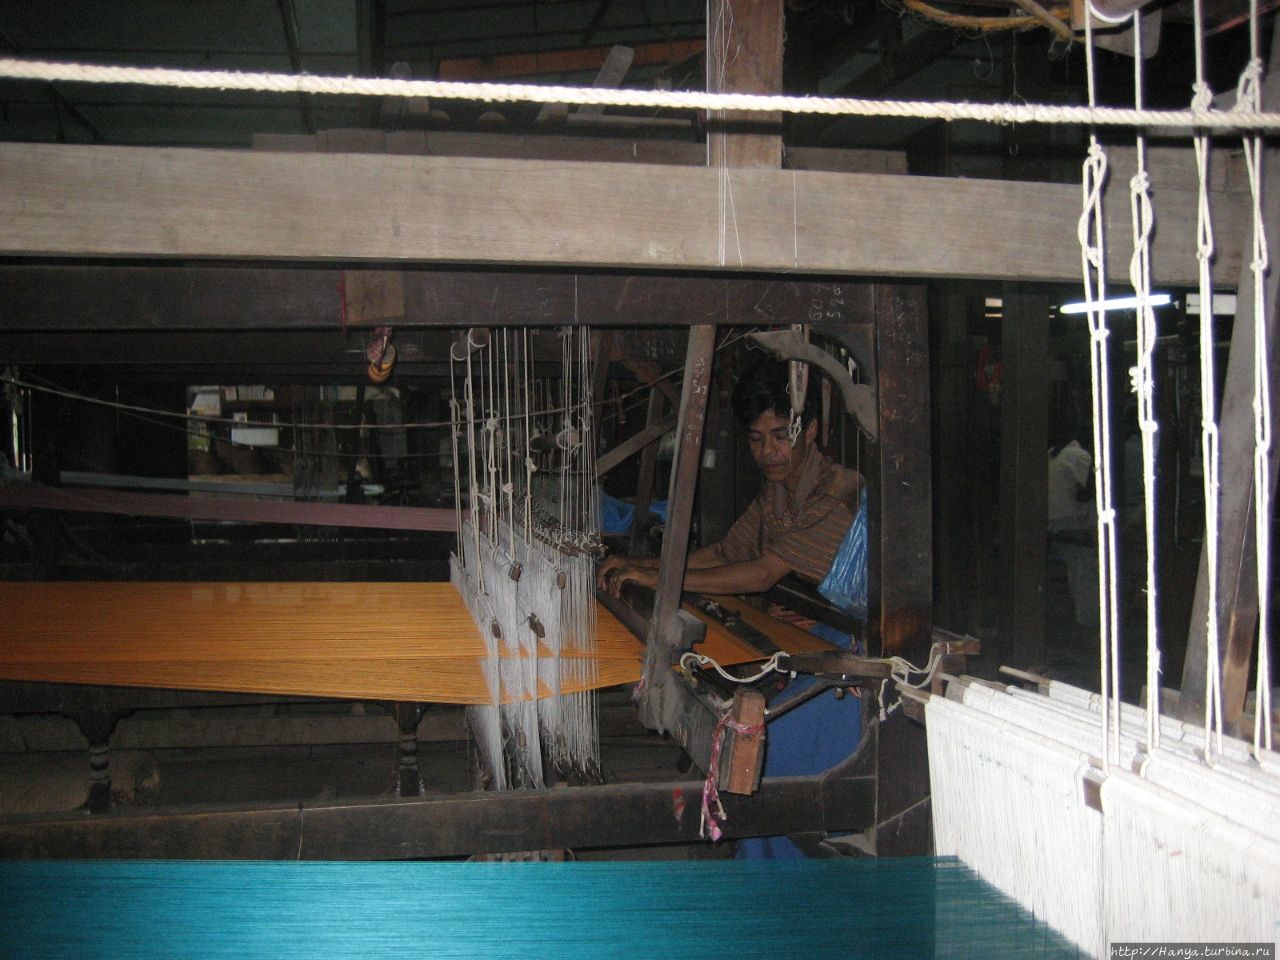 Ткацкий станок для изготовления шелкового полотна Амарапура, Мьянма